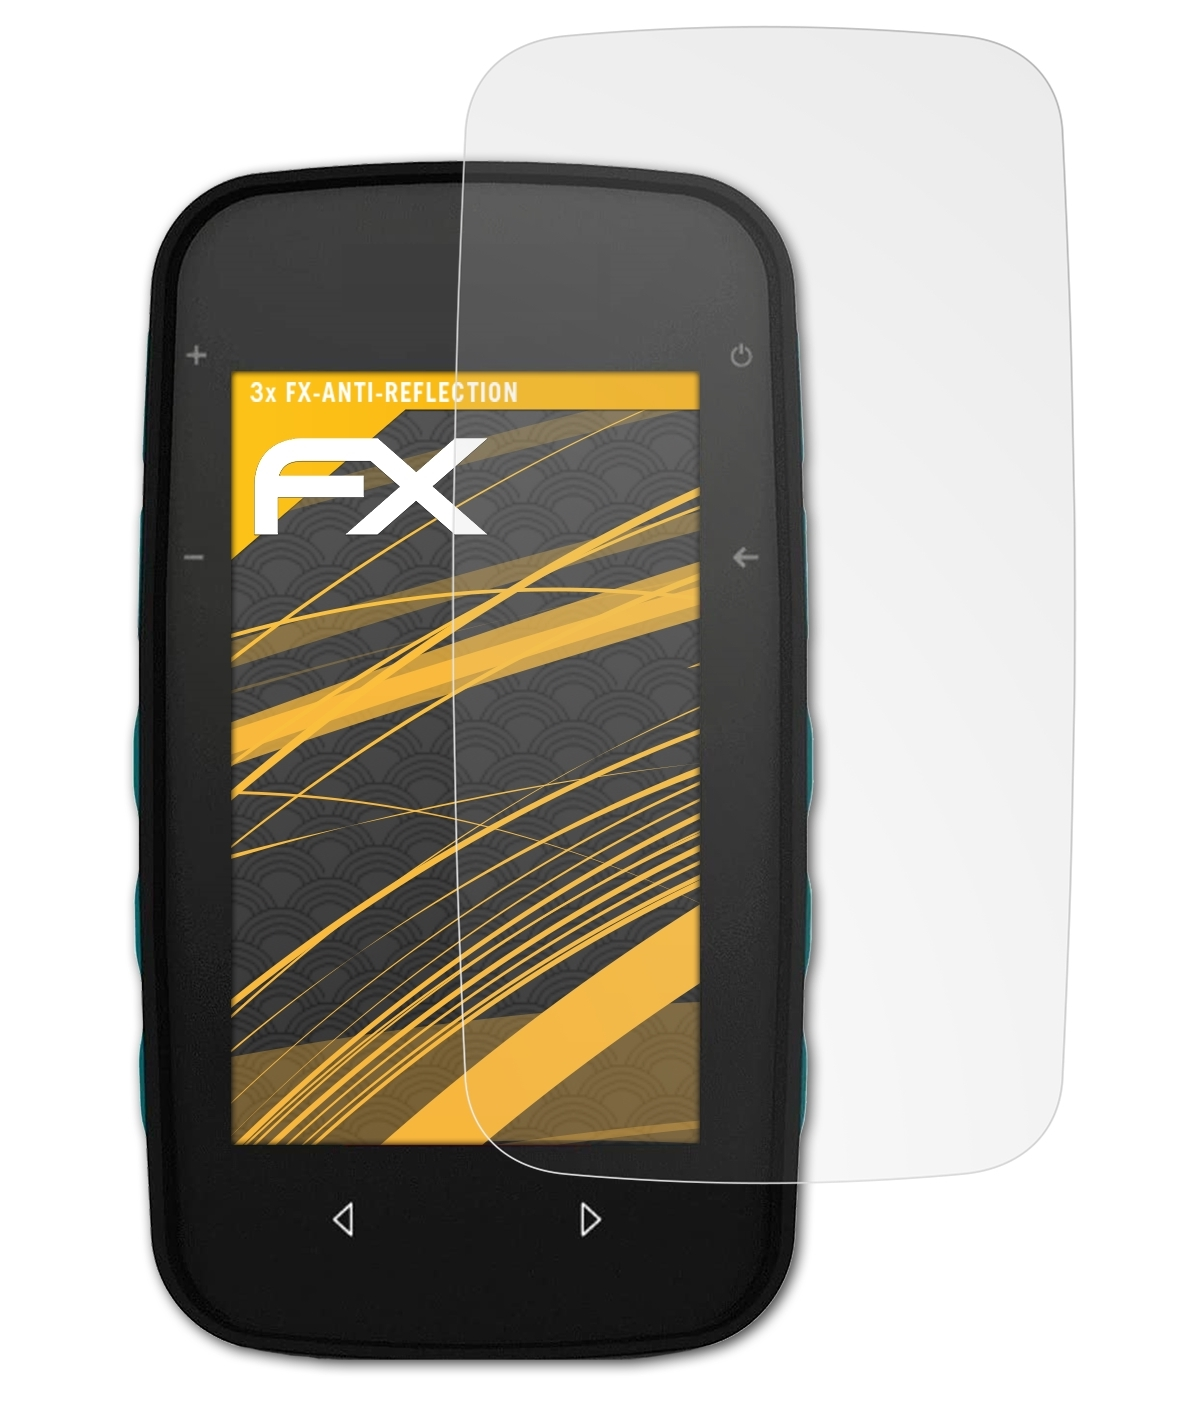 FX-Antireflex Displayschutz(für TwoNav 3x Cross) ATFOLIX